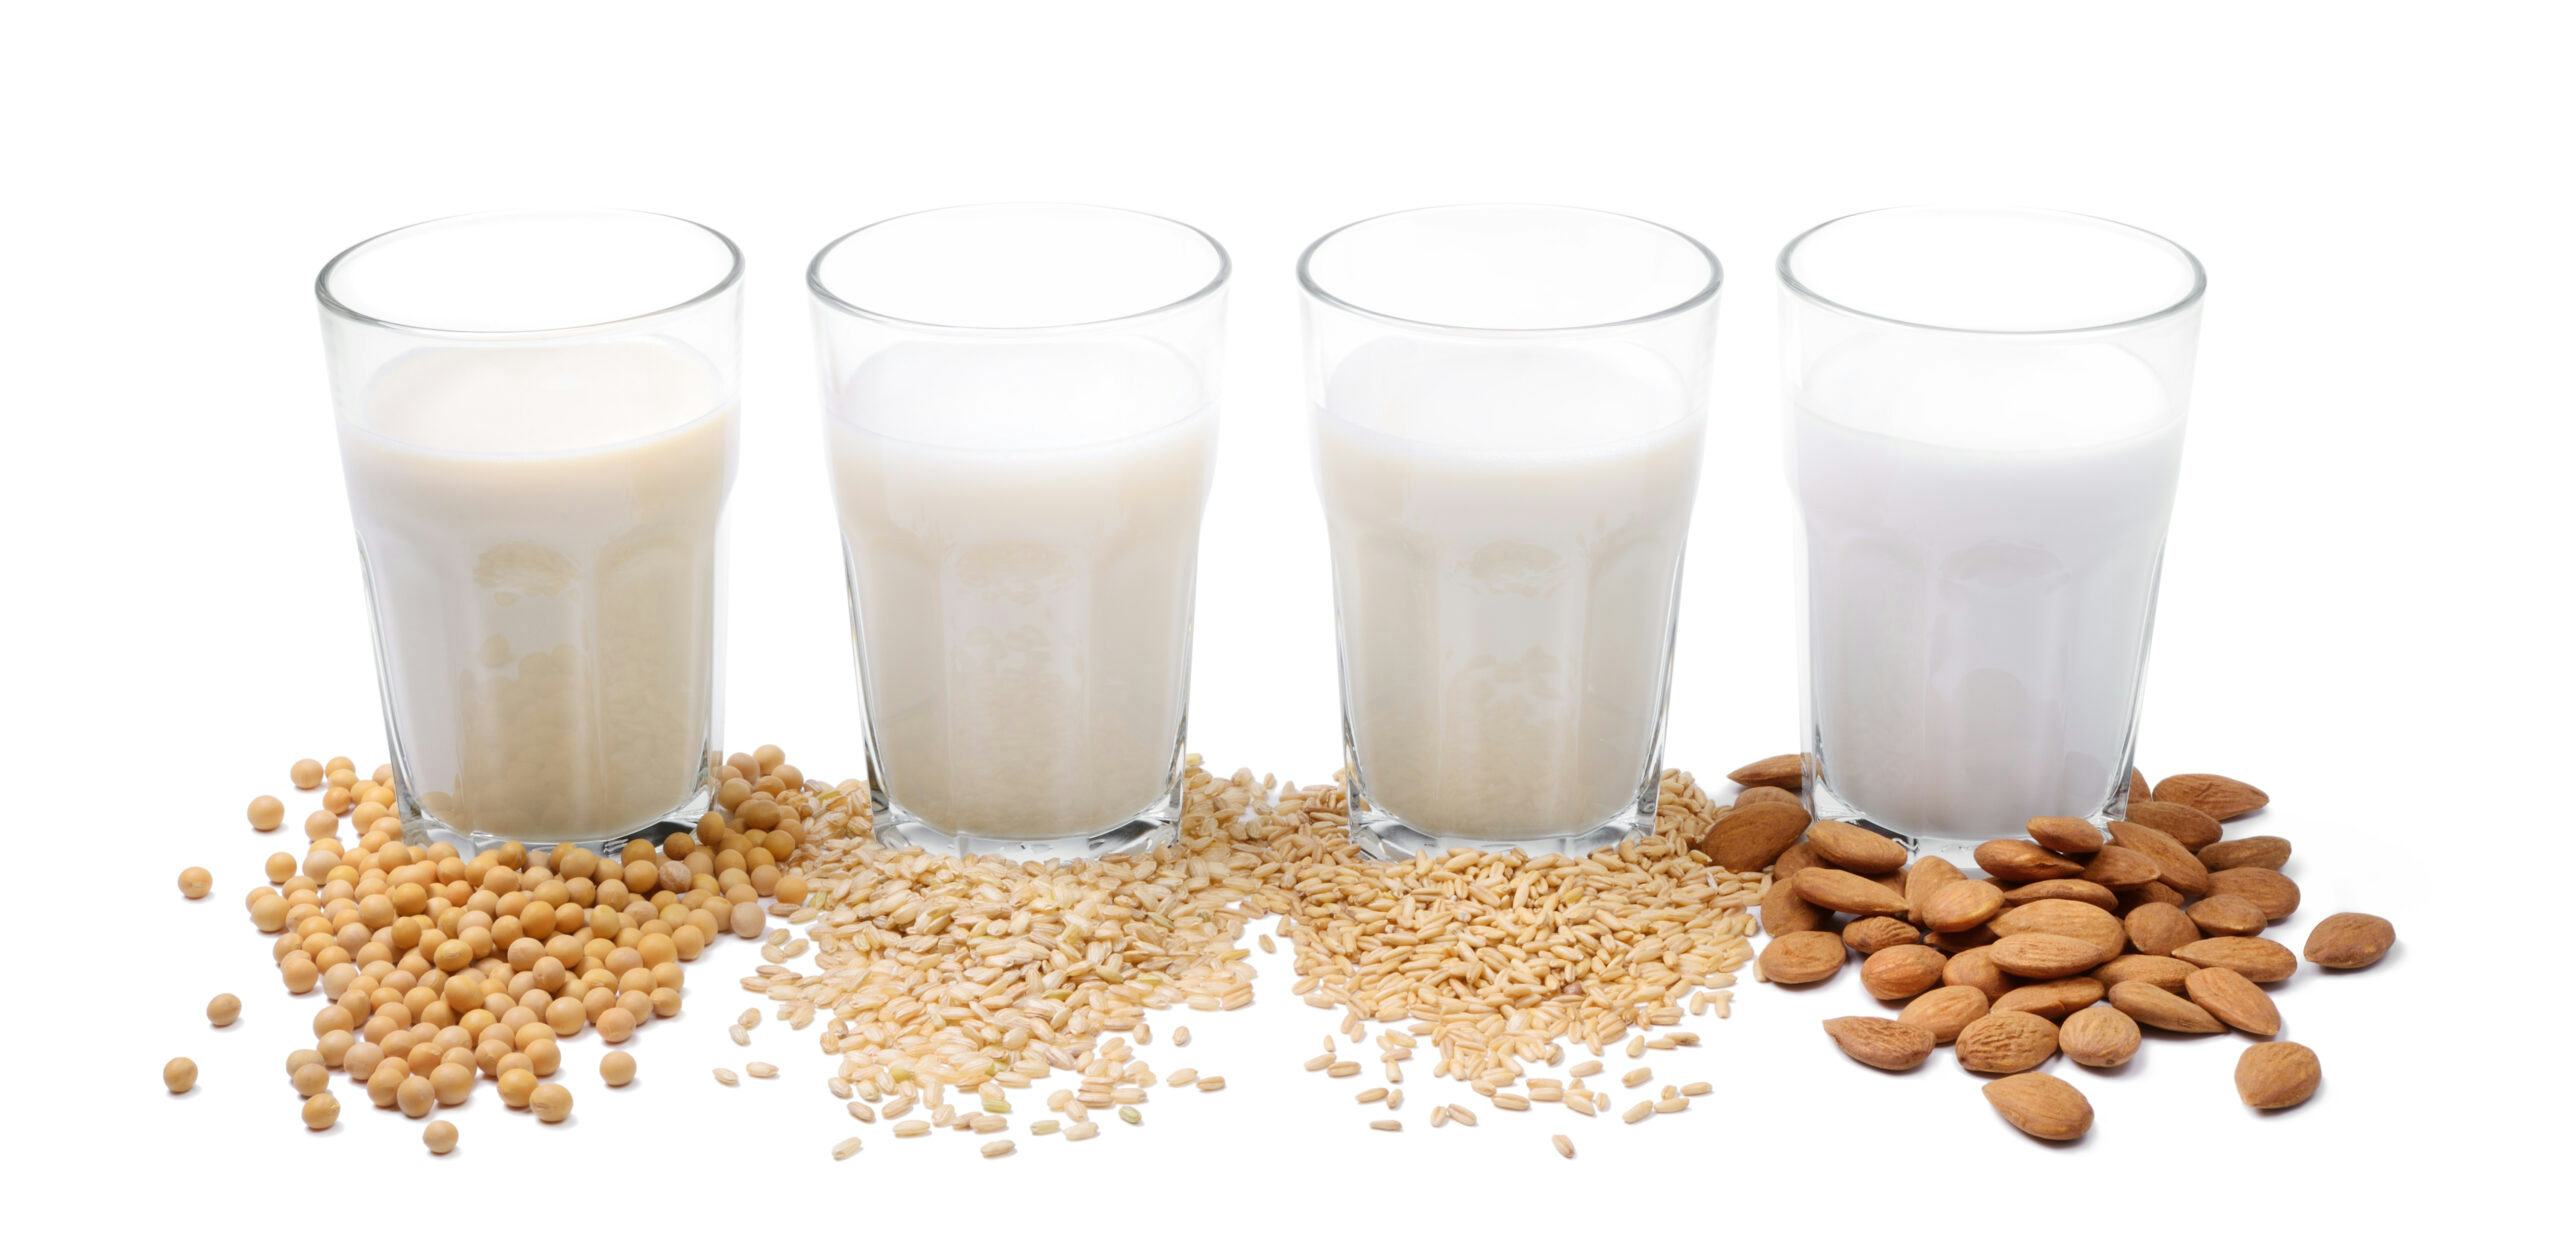 Vier verschillende plantaardige melkvarianten: soja, rijst, haver en amandel.